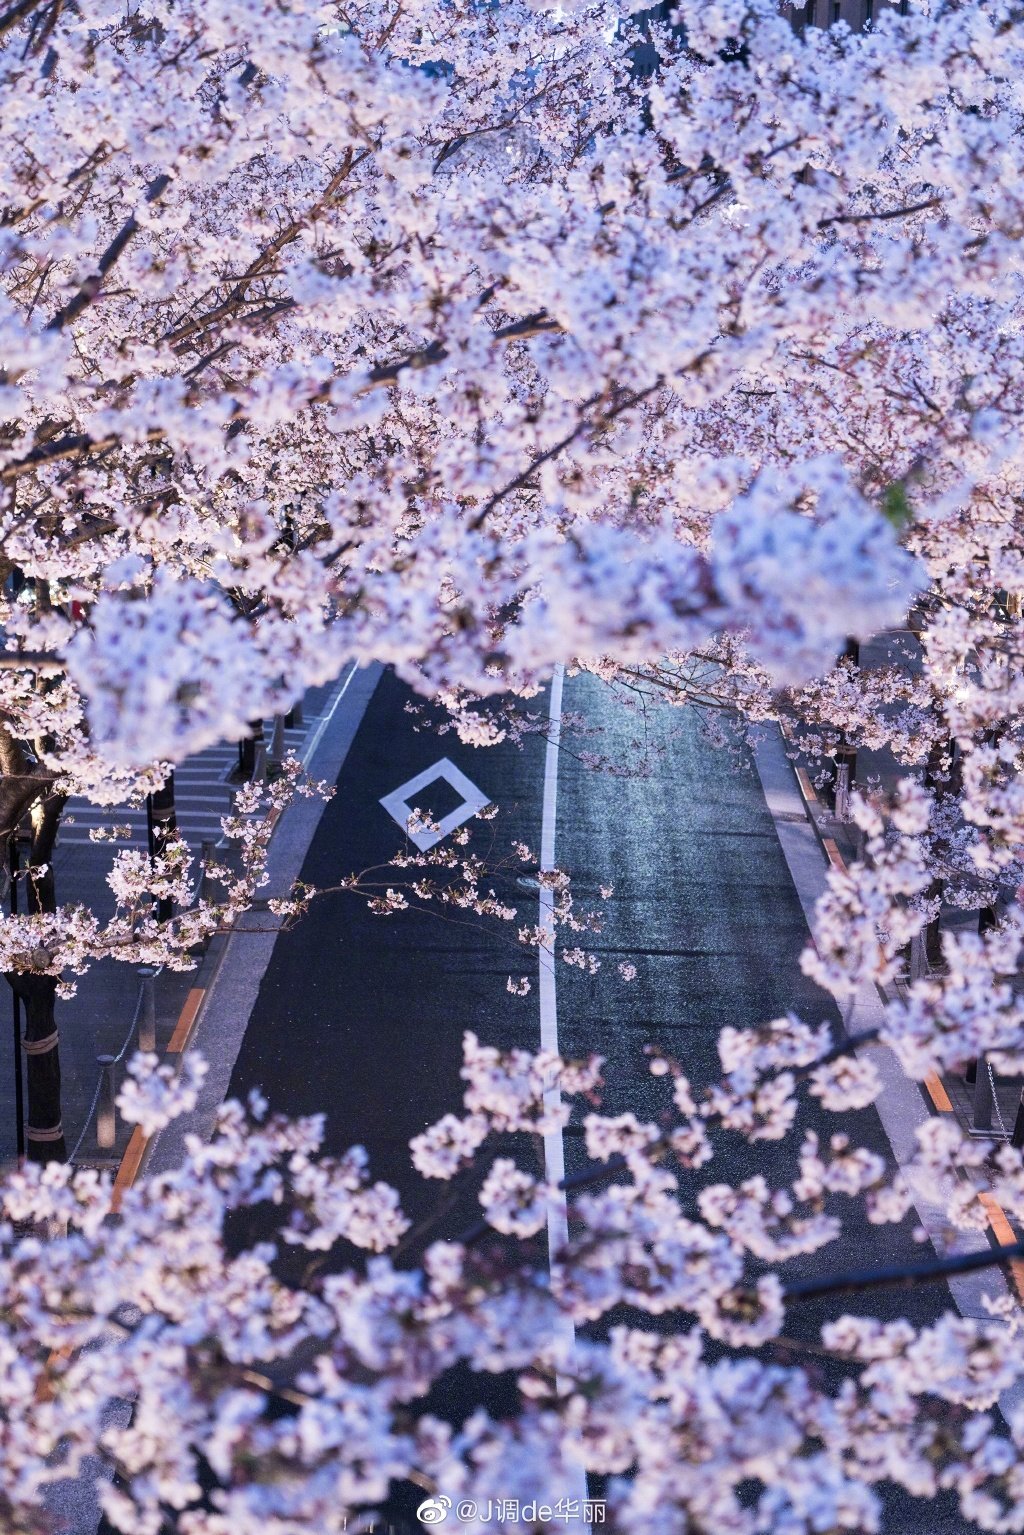 日本东京千鸟渊公园樱花盛开 民众泛舟赏樱如仙境